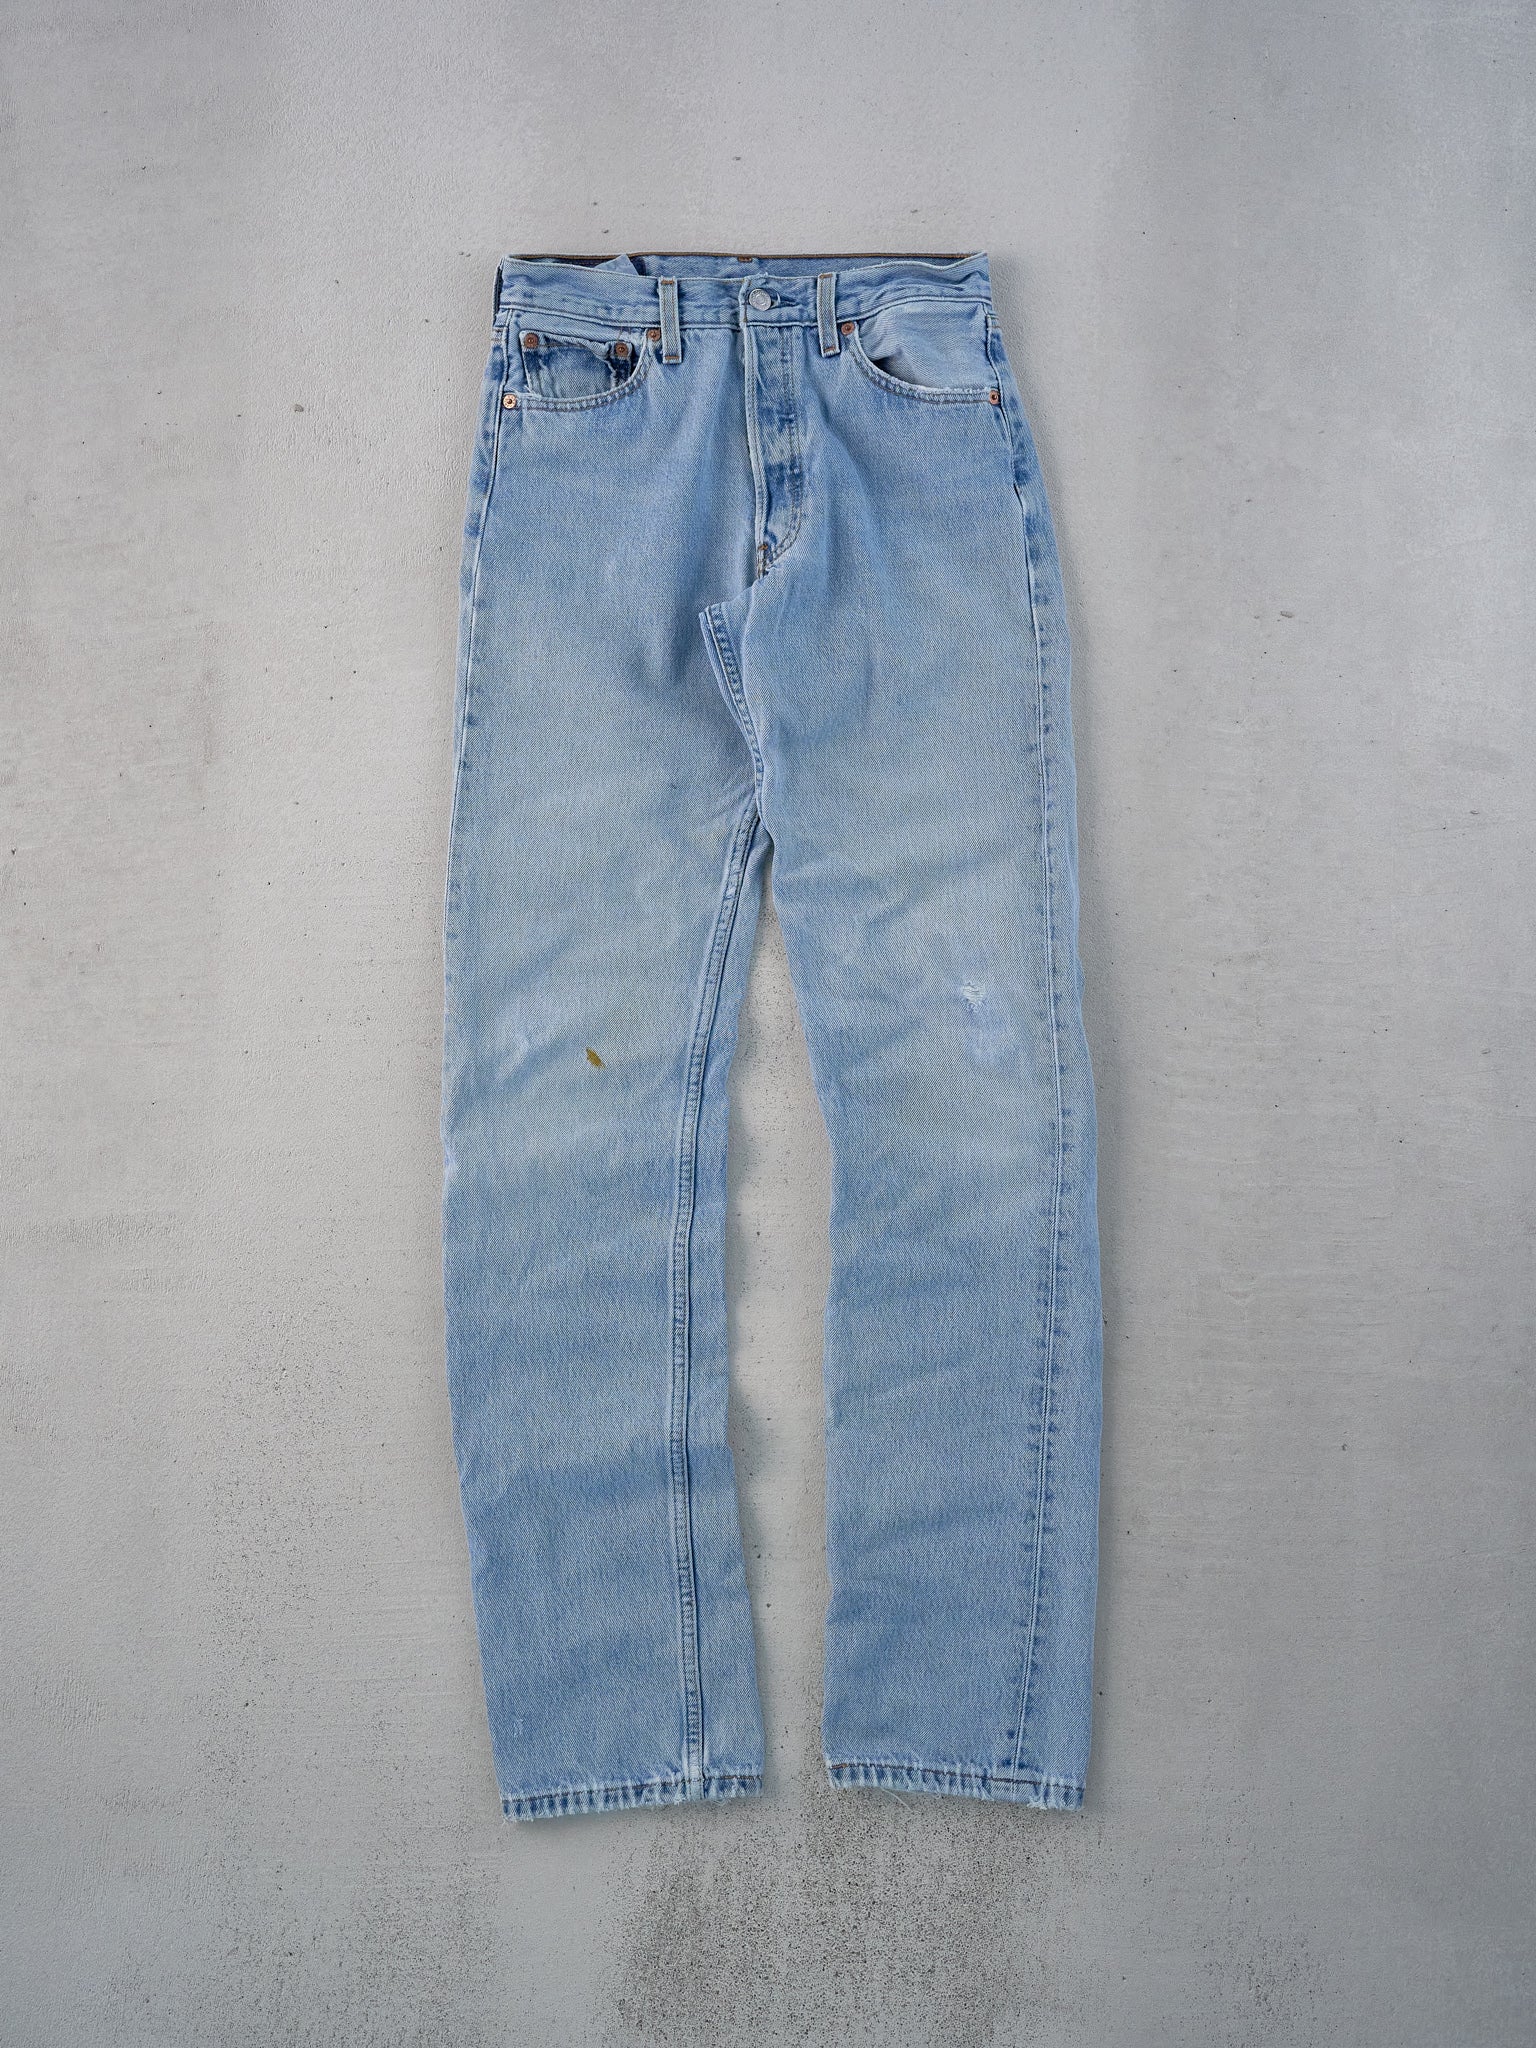 Vintage 90s Blue Levi's 501 Denim Jeans (27x34)